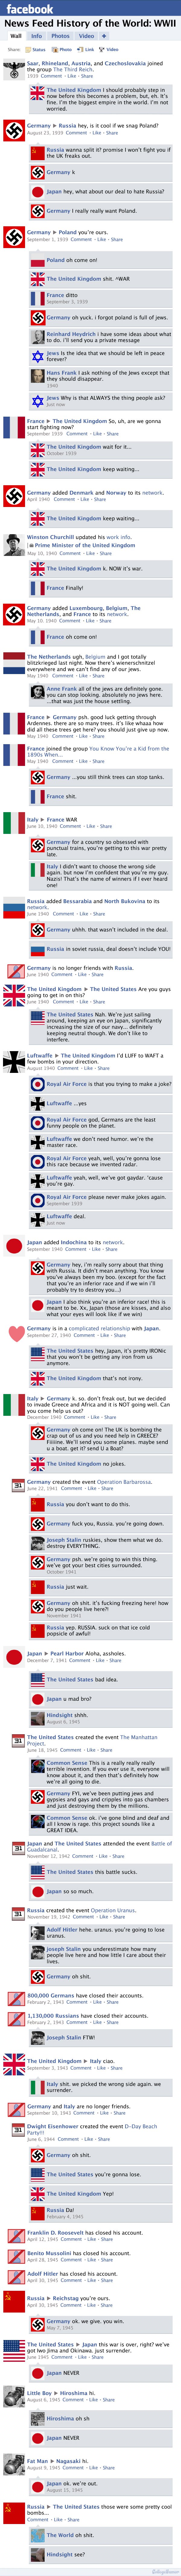 World War II, Facebook news feed